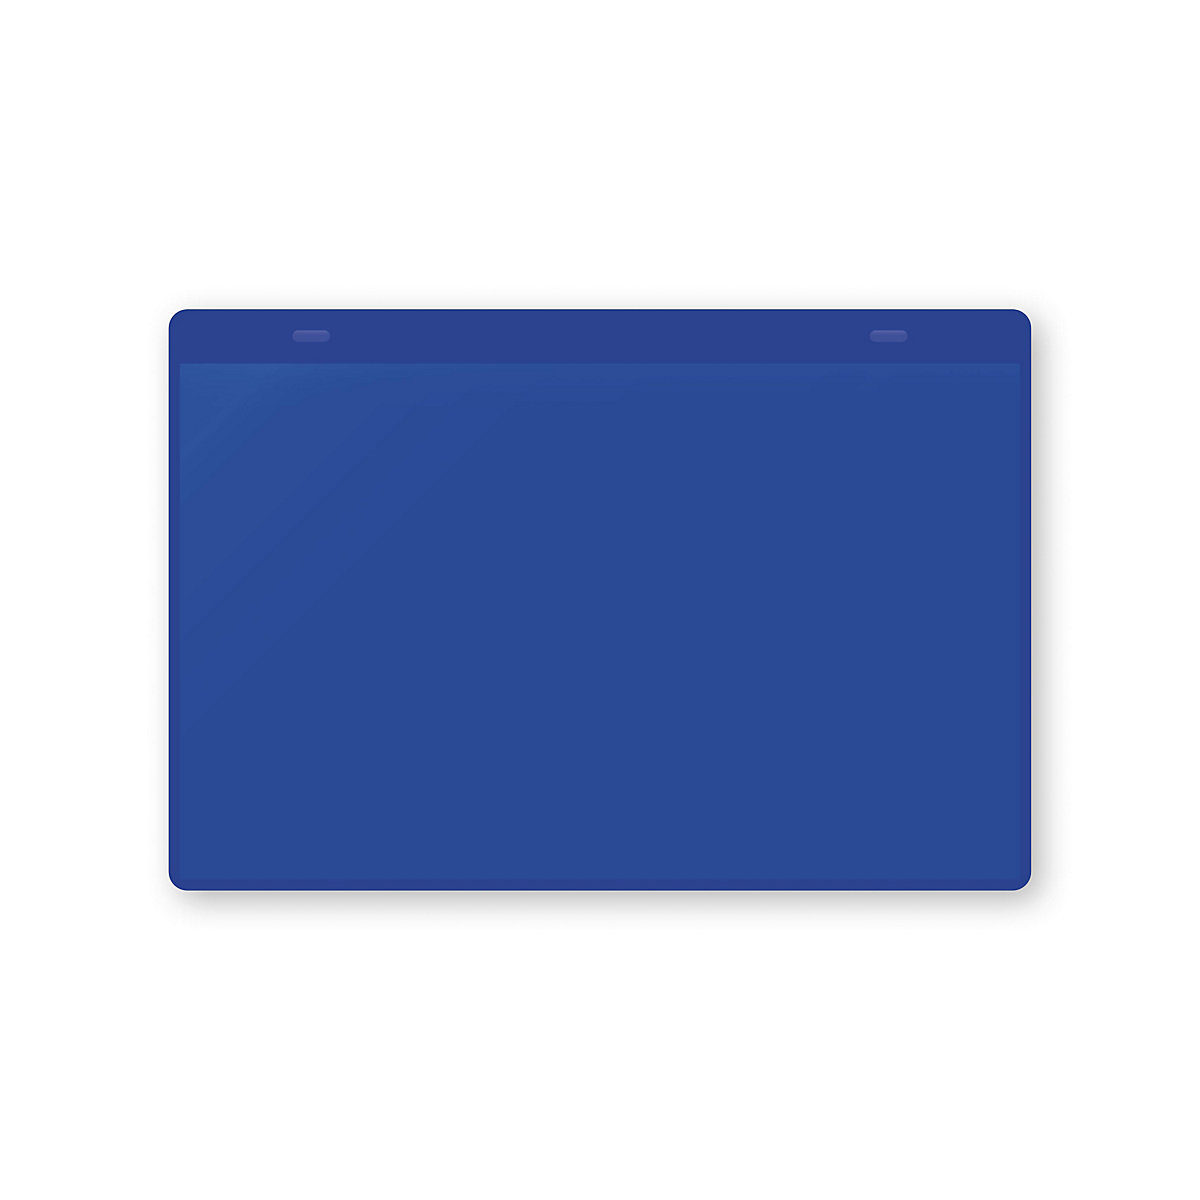 Dokumentumtartó tasakok akasztópánttal, DIN A5, fekvő, cs. e. 10 db, kék